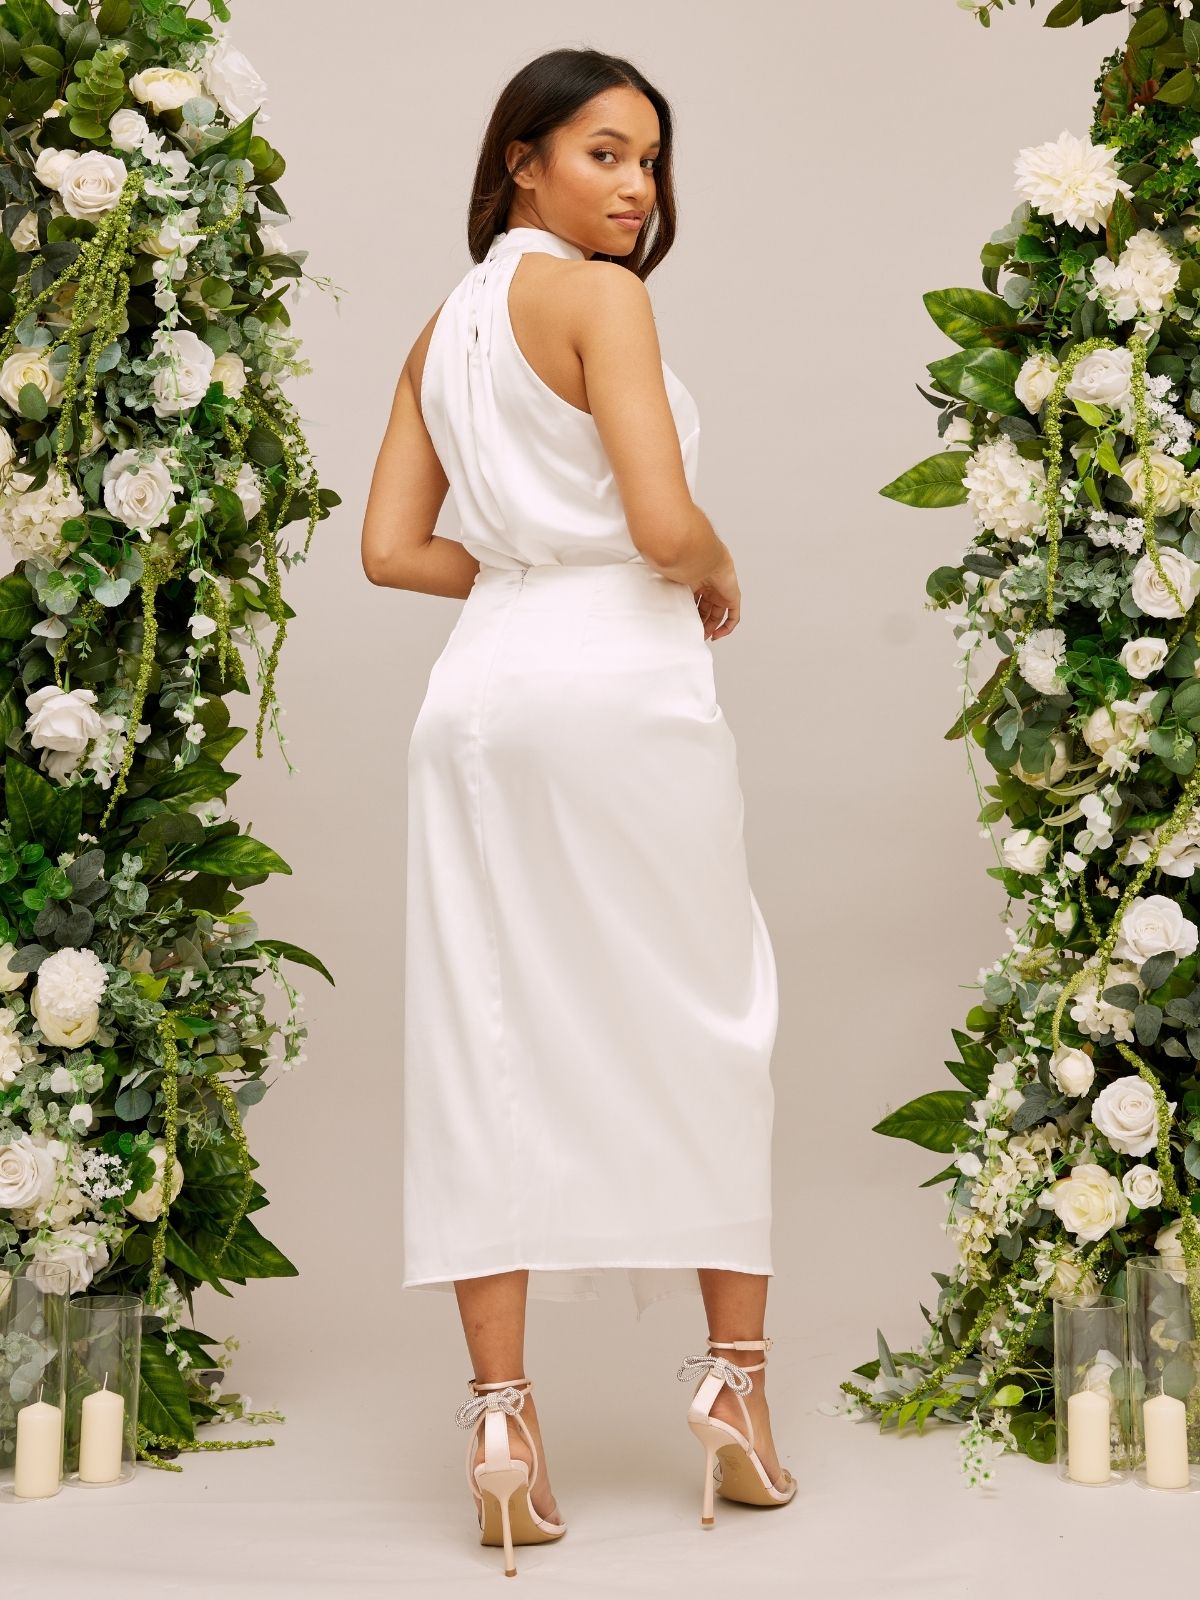 High Waist Satin Drape Bridal Skirt / Ivory